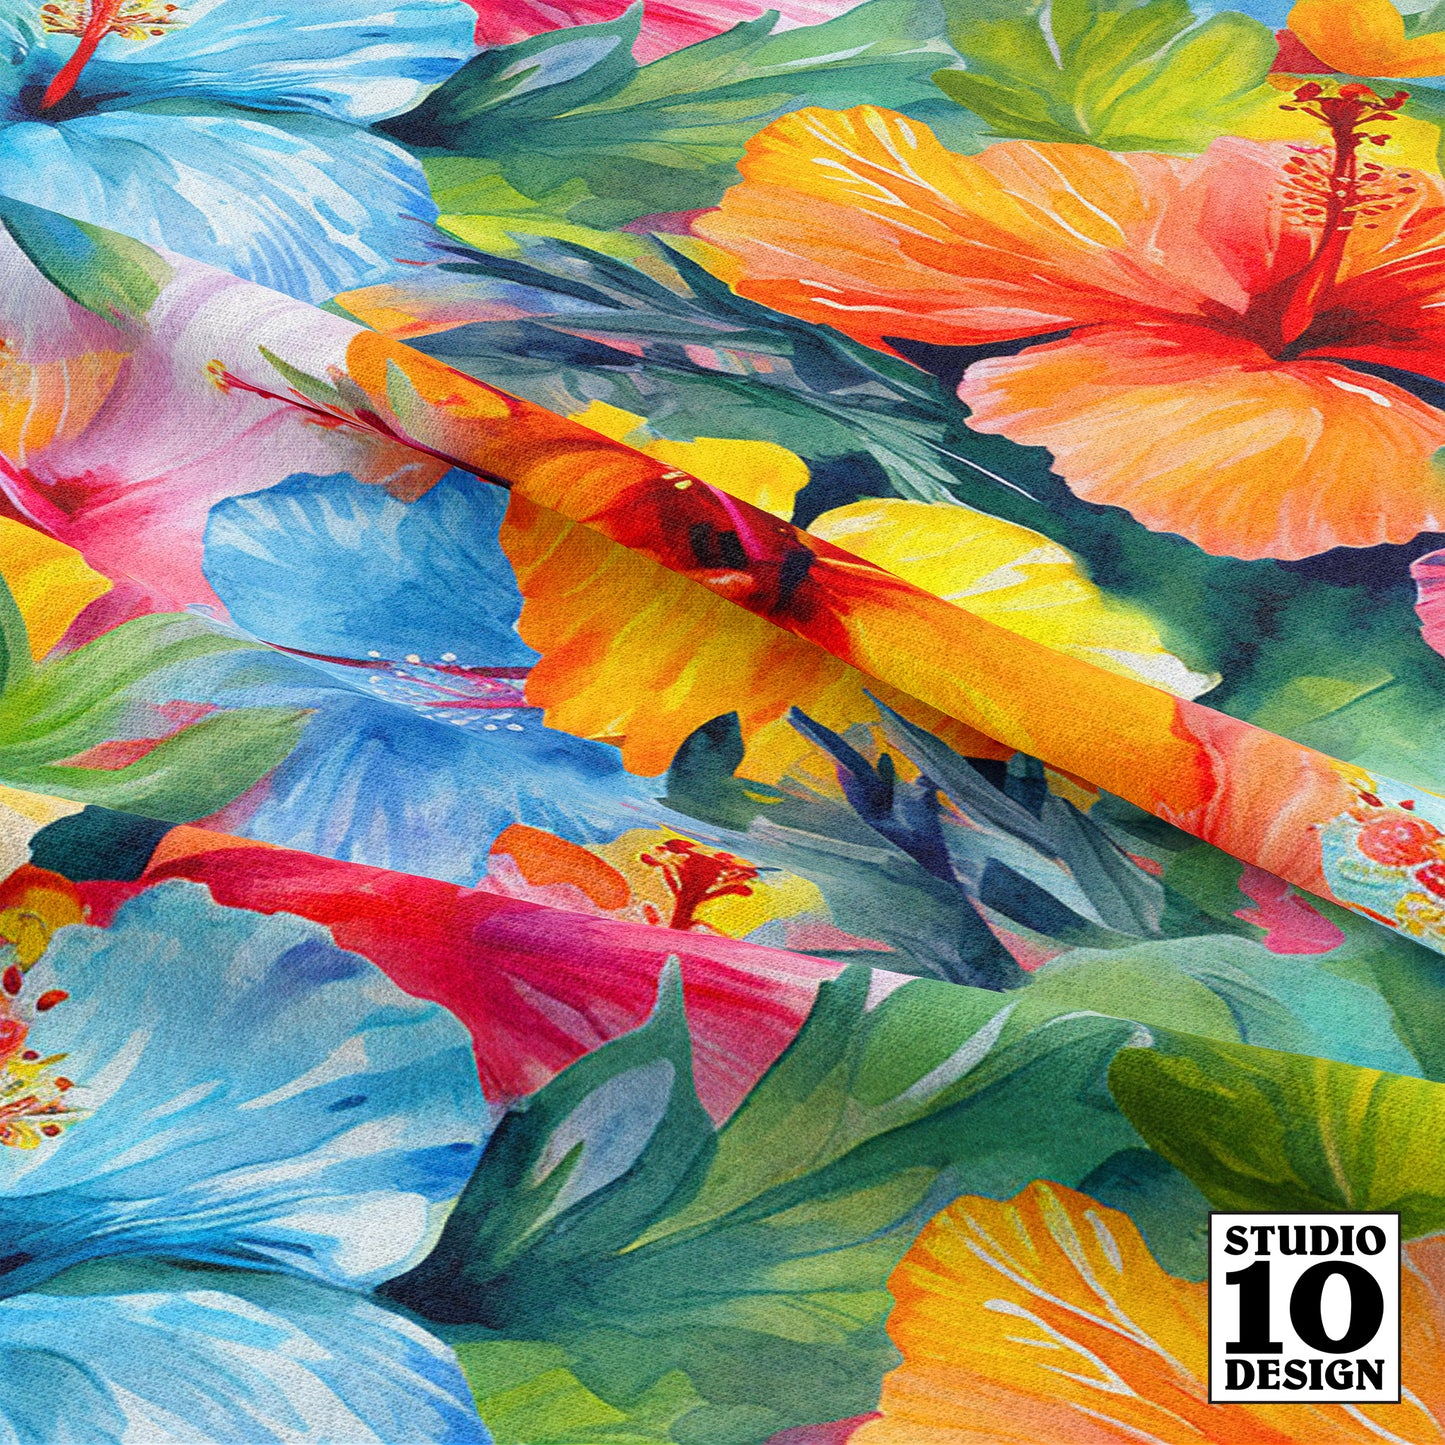 Watercolor Hibiscus Flowers (Light III) Printed Fabric by Studio Ten Design